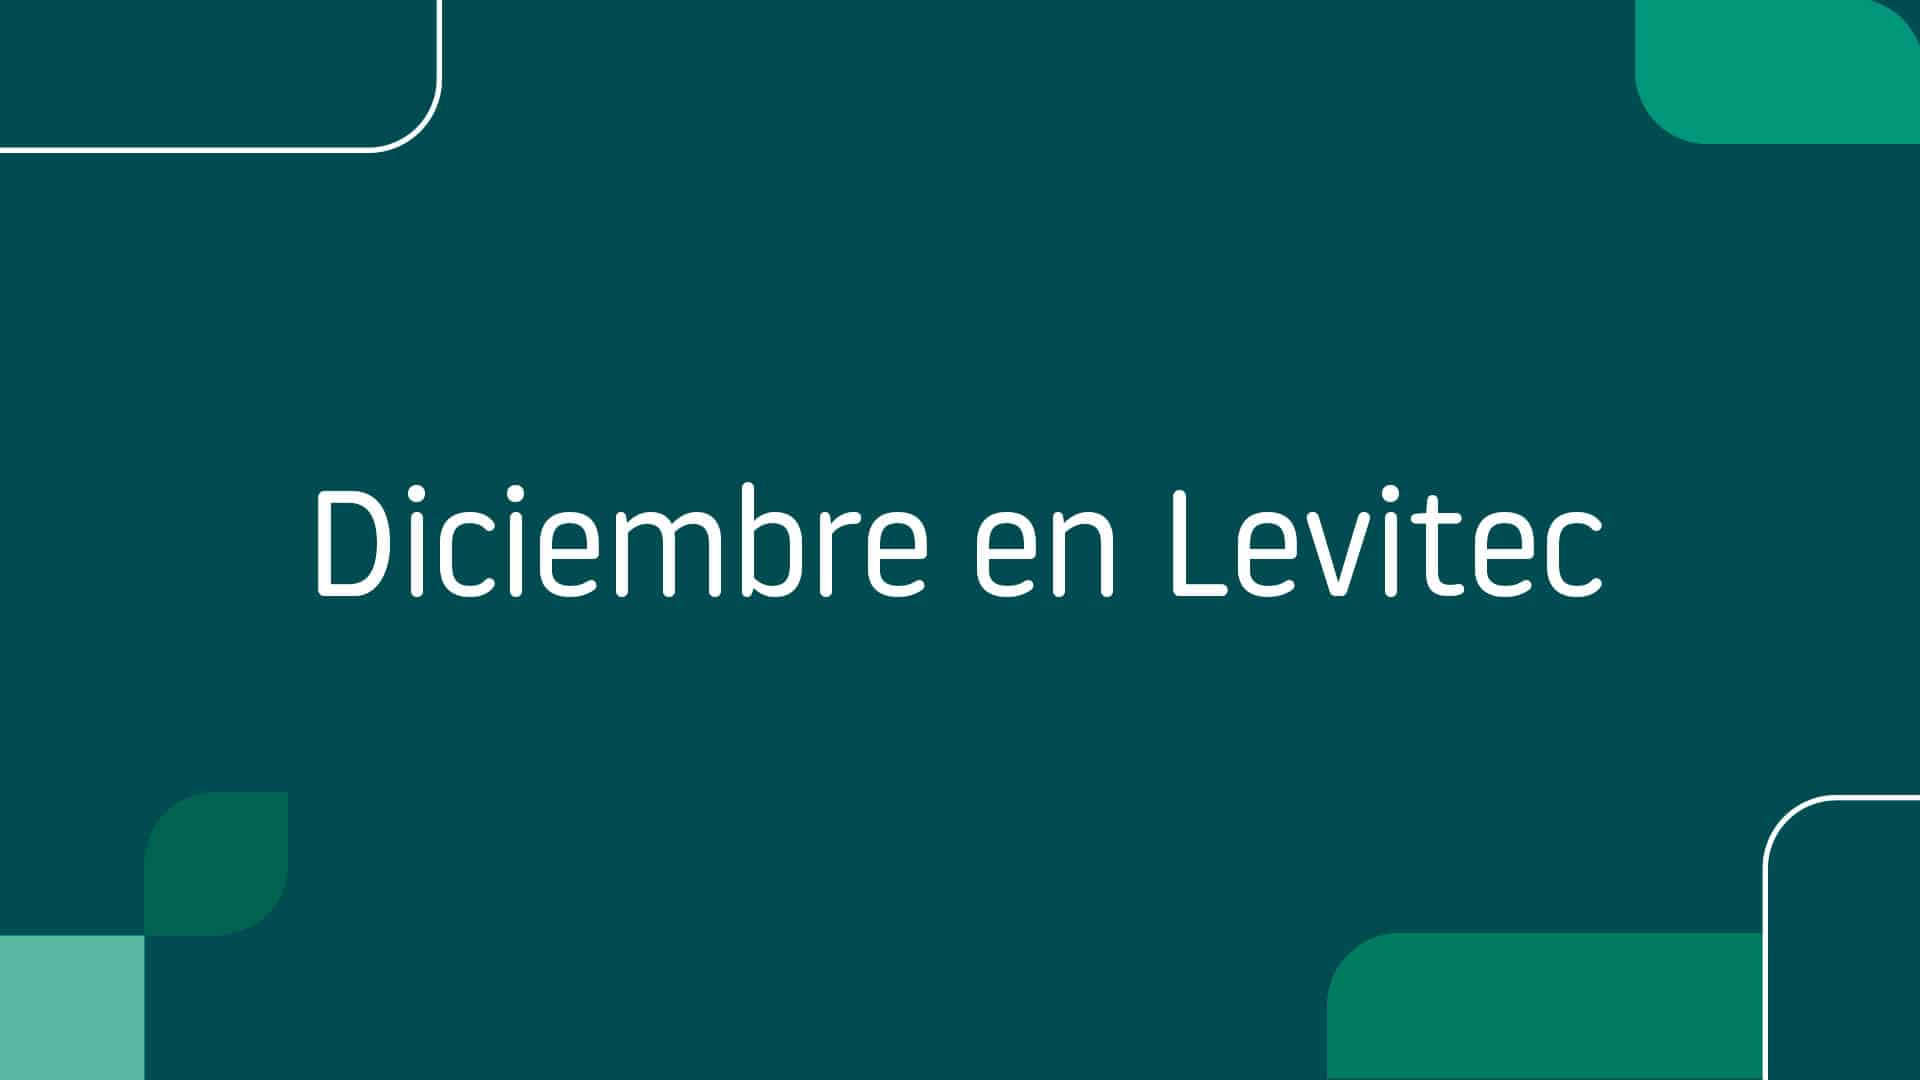 Diciembre en Levitec